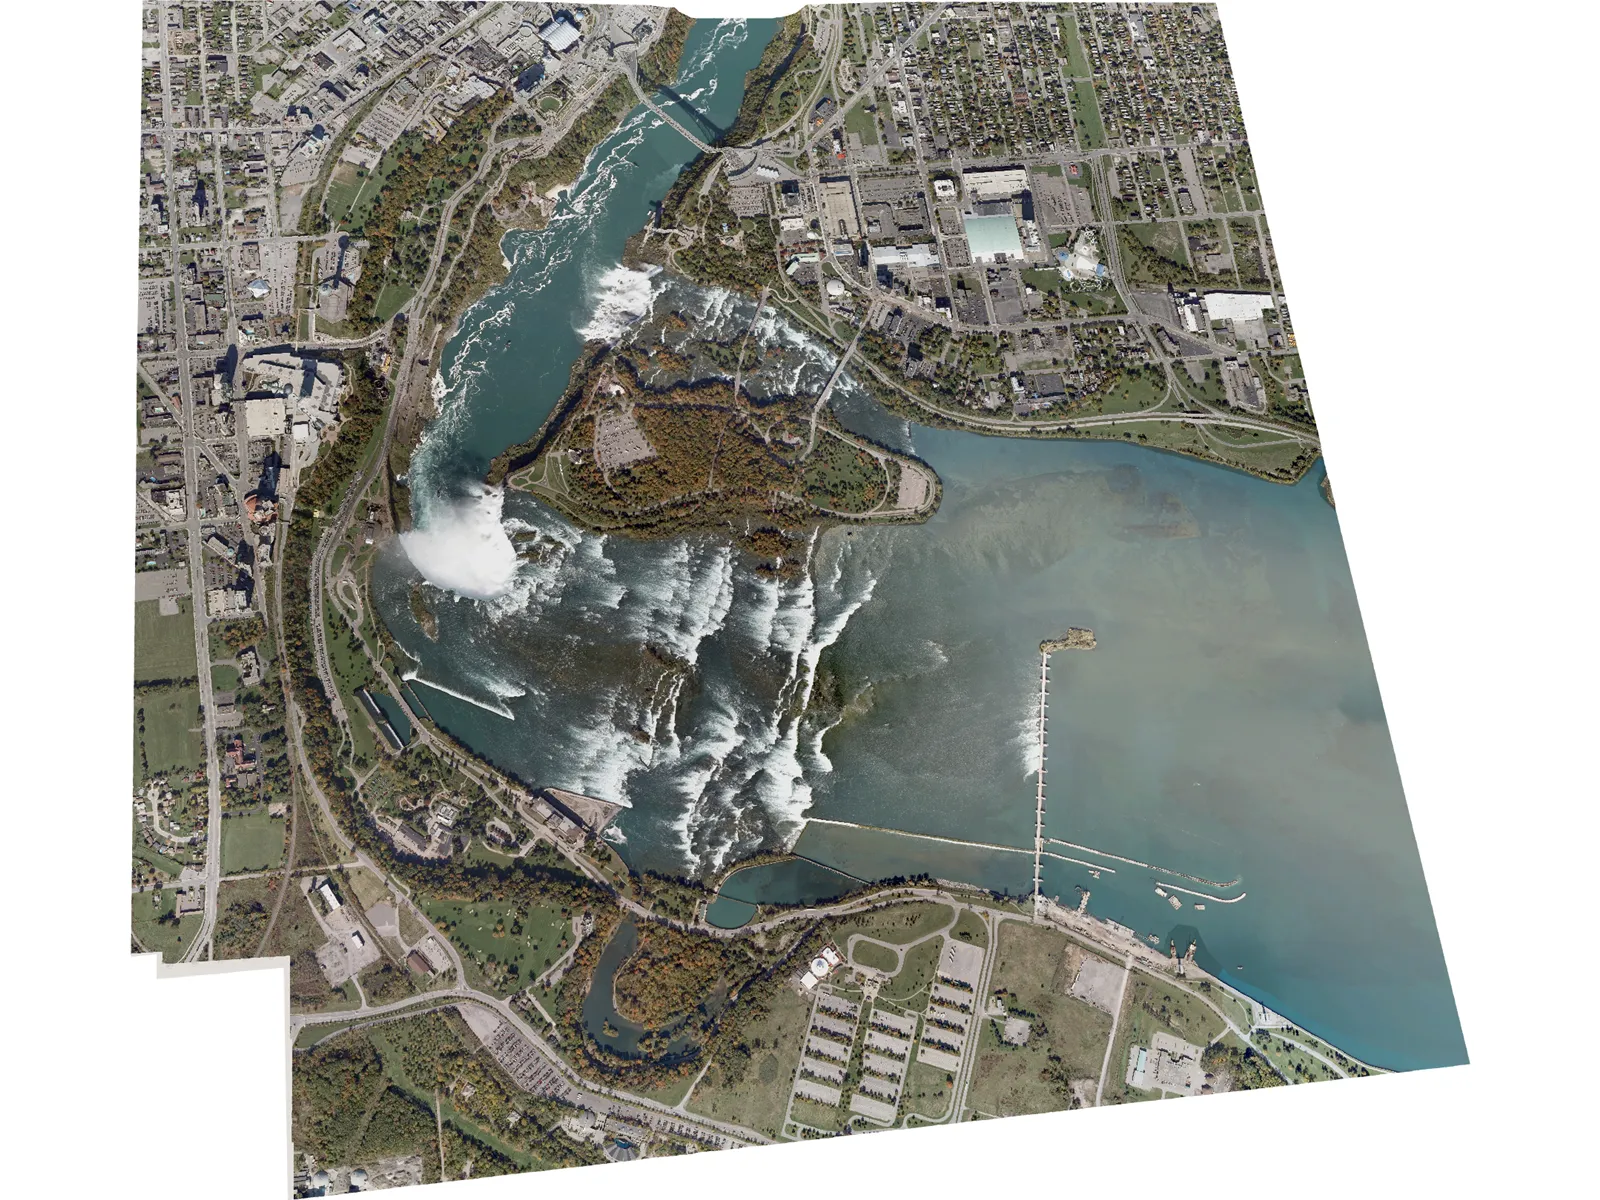 Niagara Falls 3D Model